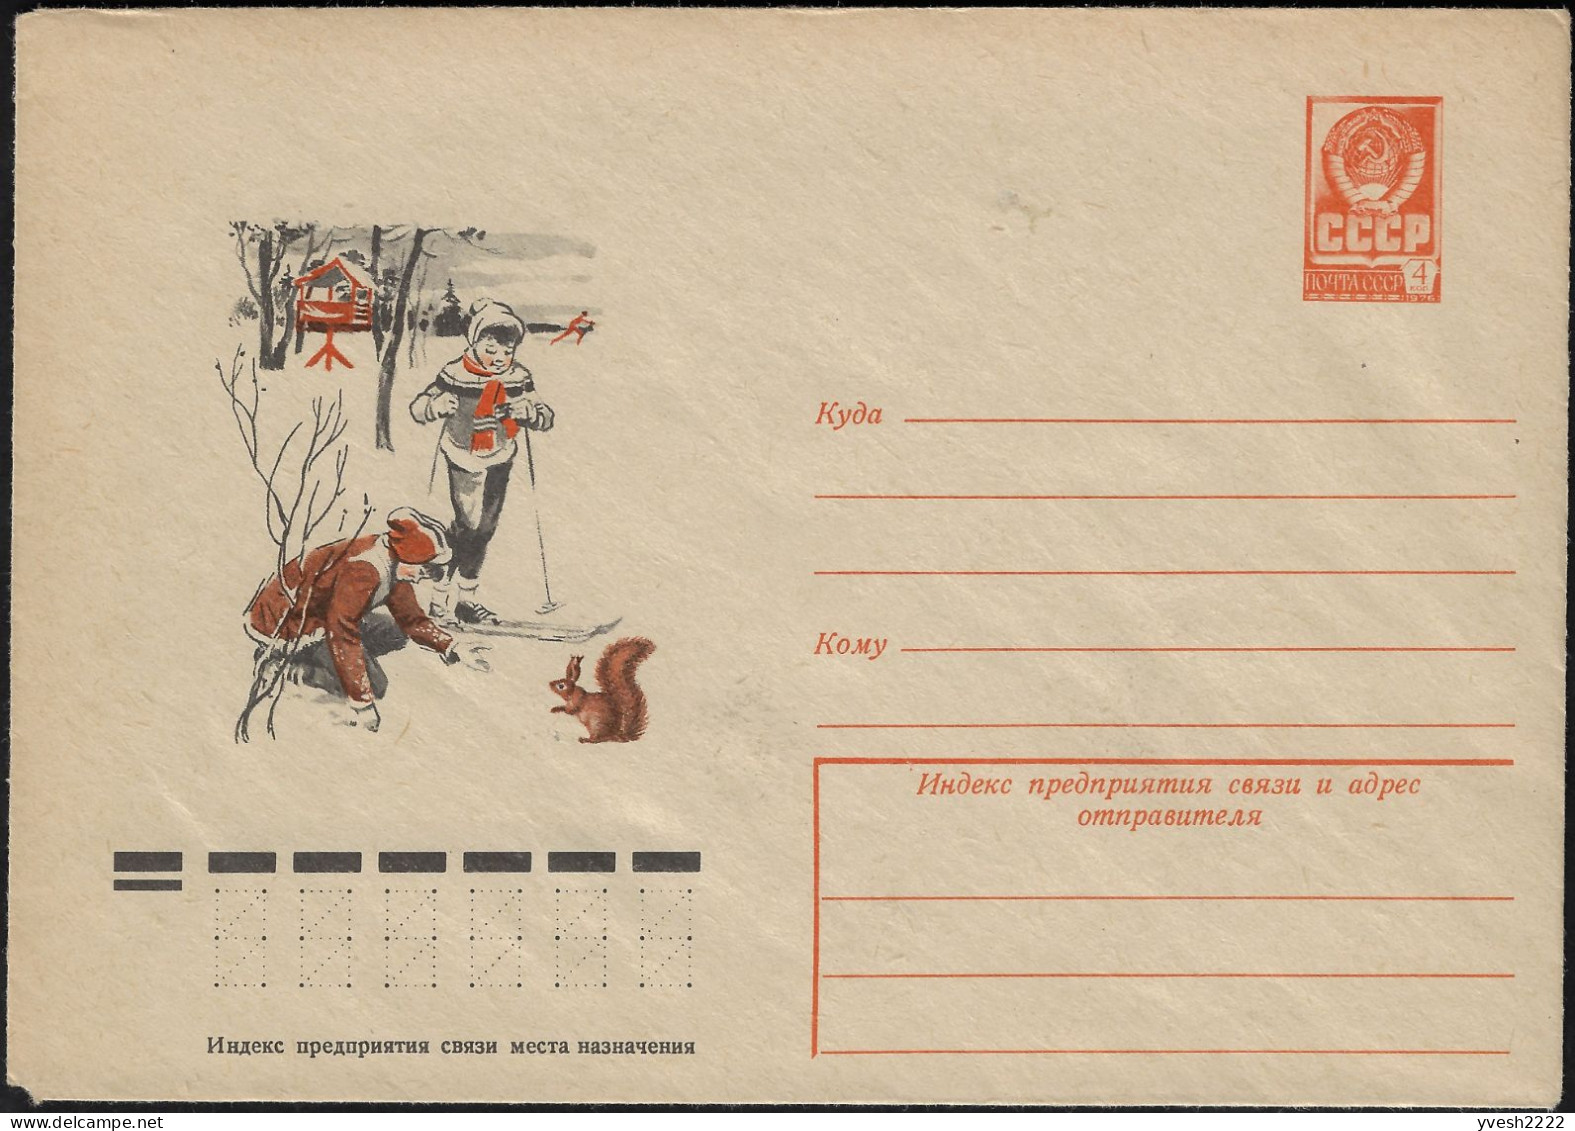 URSS 1977. Entier Postal Enveloppe. Enfants, Ski De Fond, écureuil - Roedores